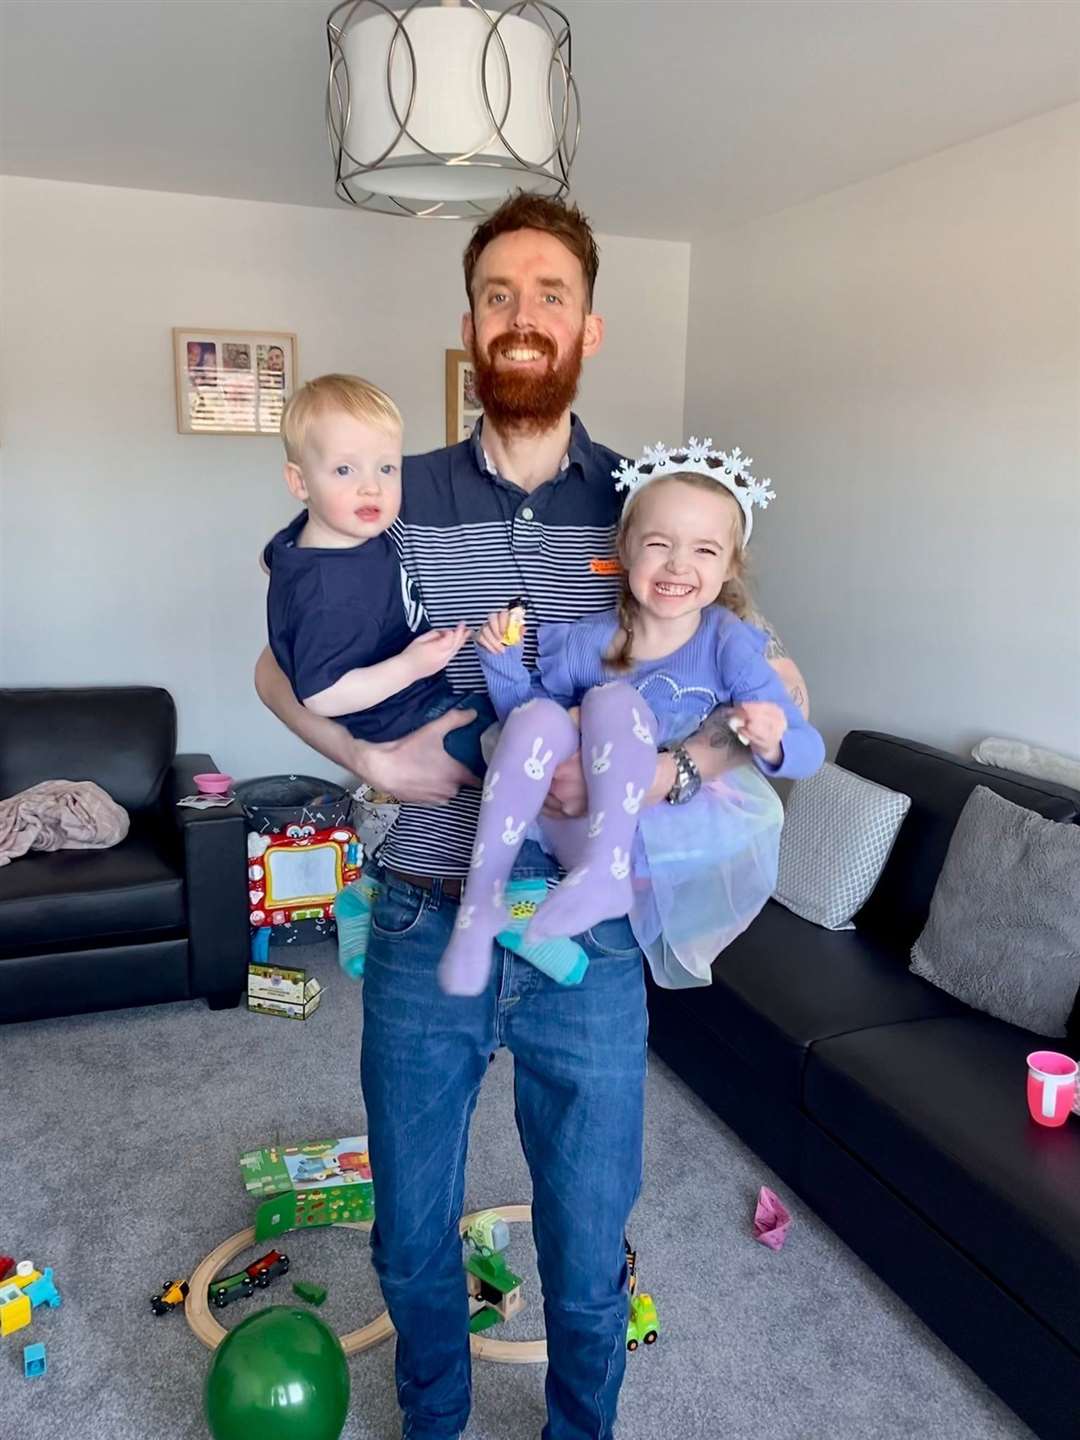 Stewart with his children.